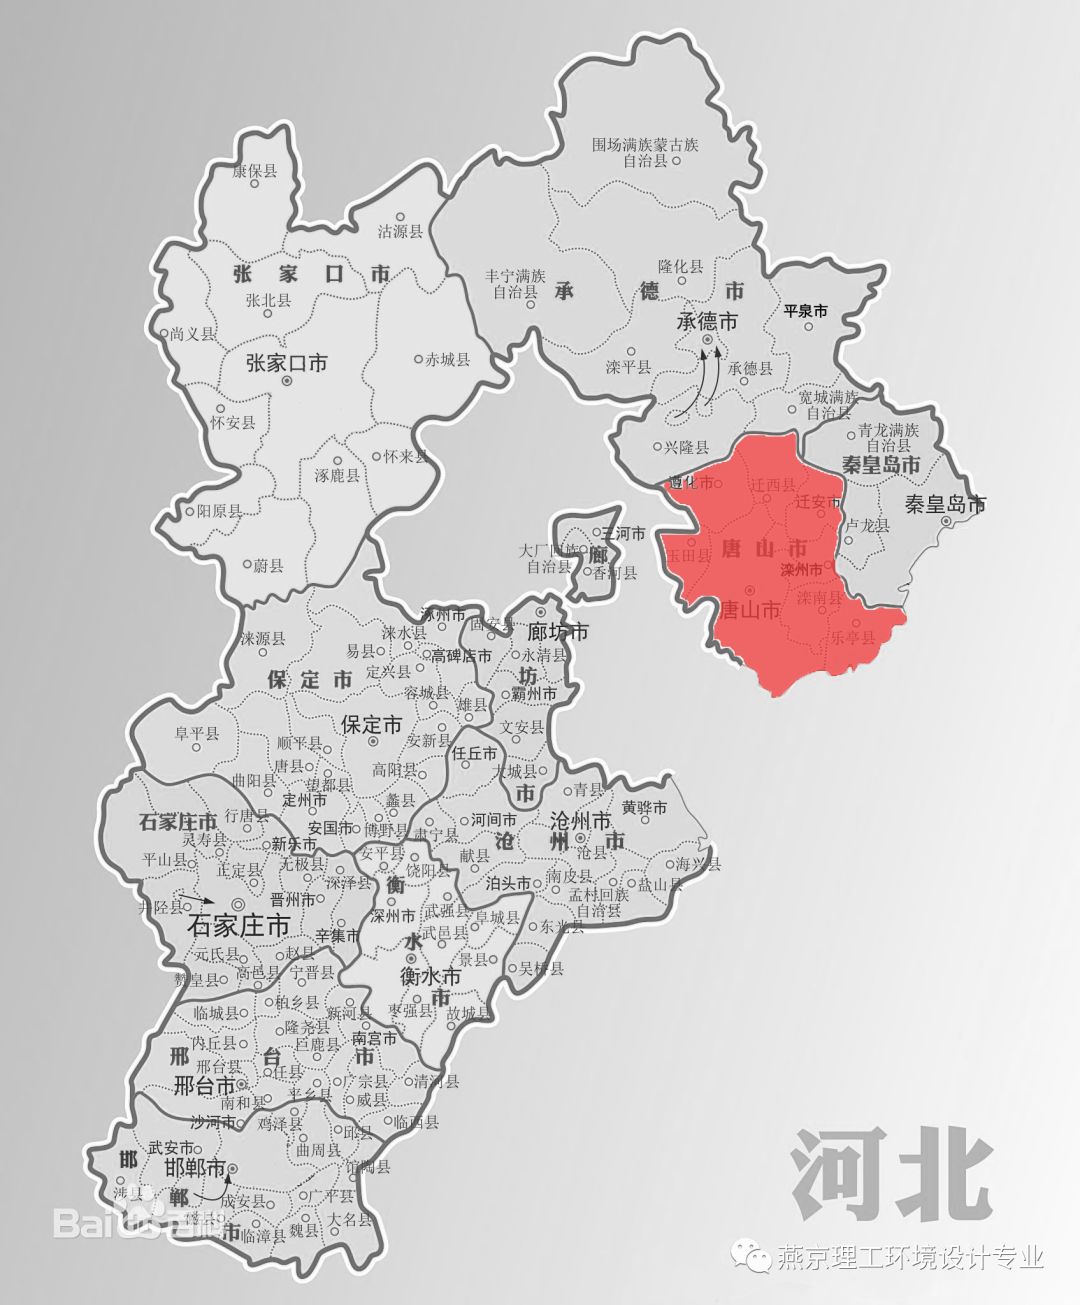 地理位置清泉钢铁厂位于河北省唐山市丰南区钱营镇唐港线(如图),河北